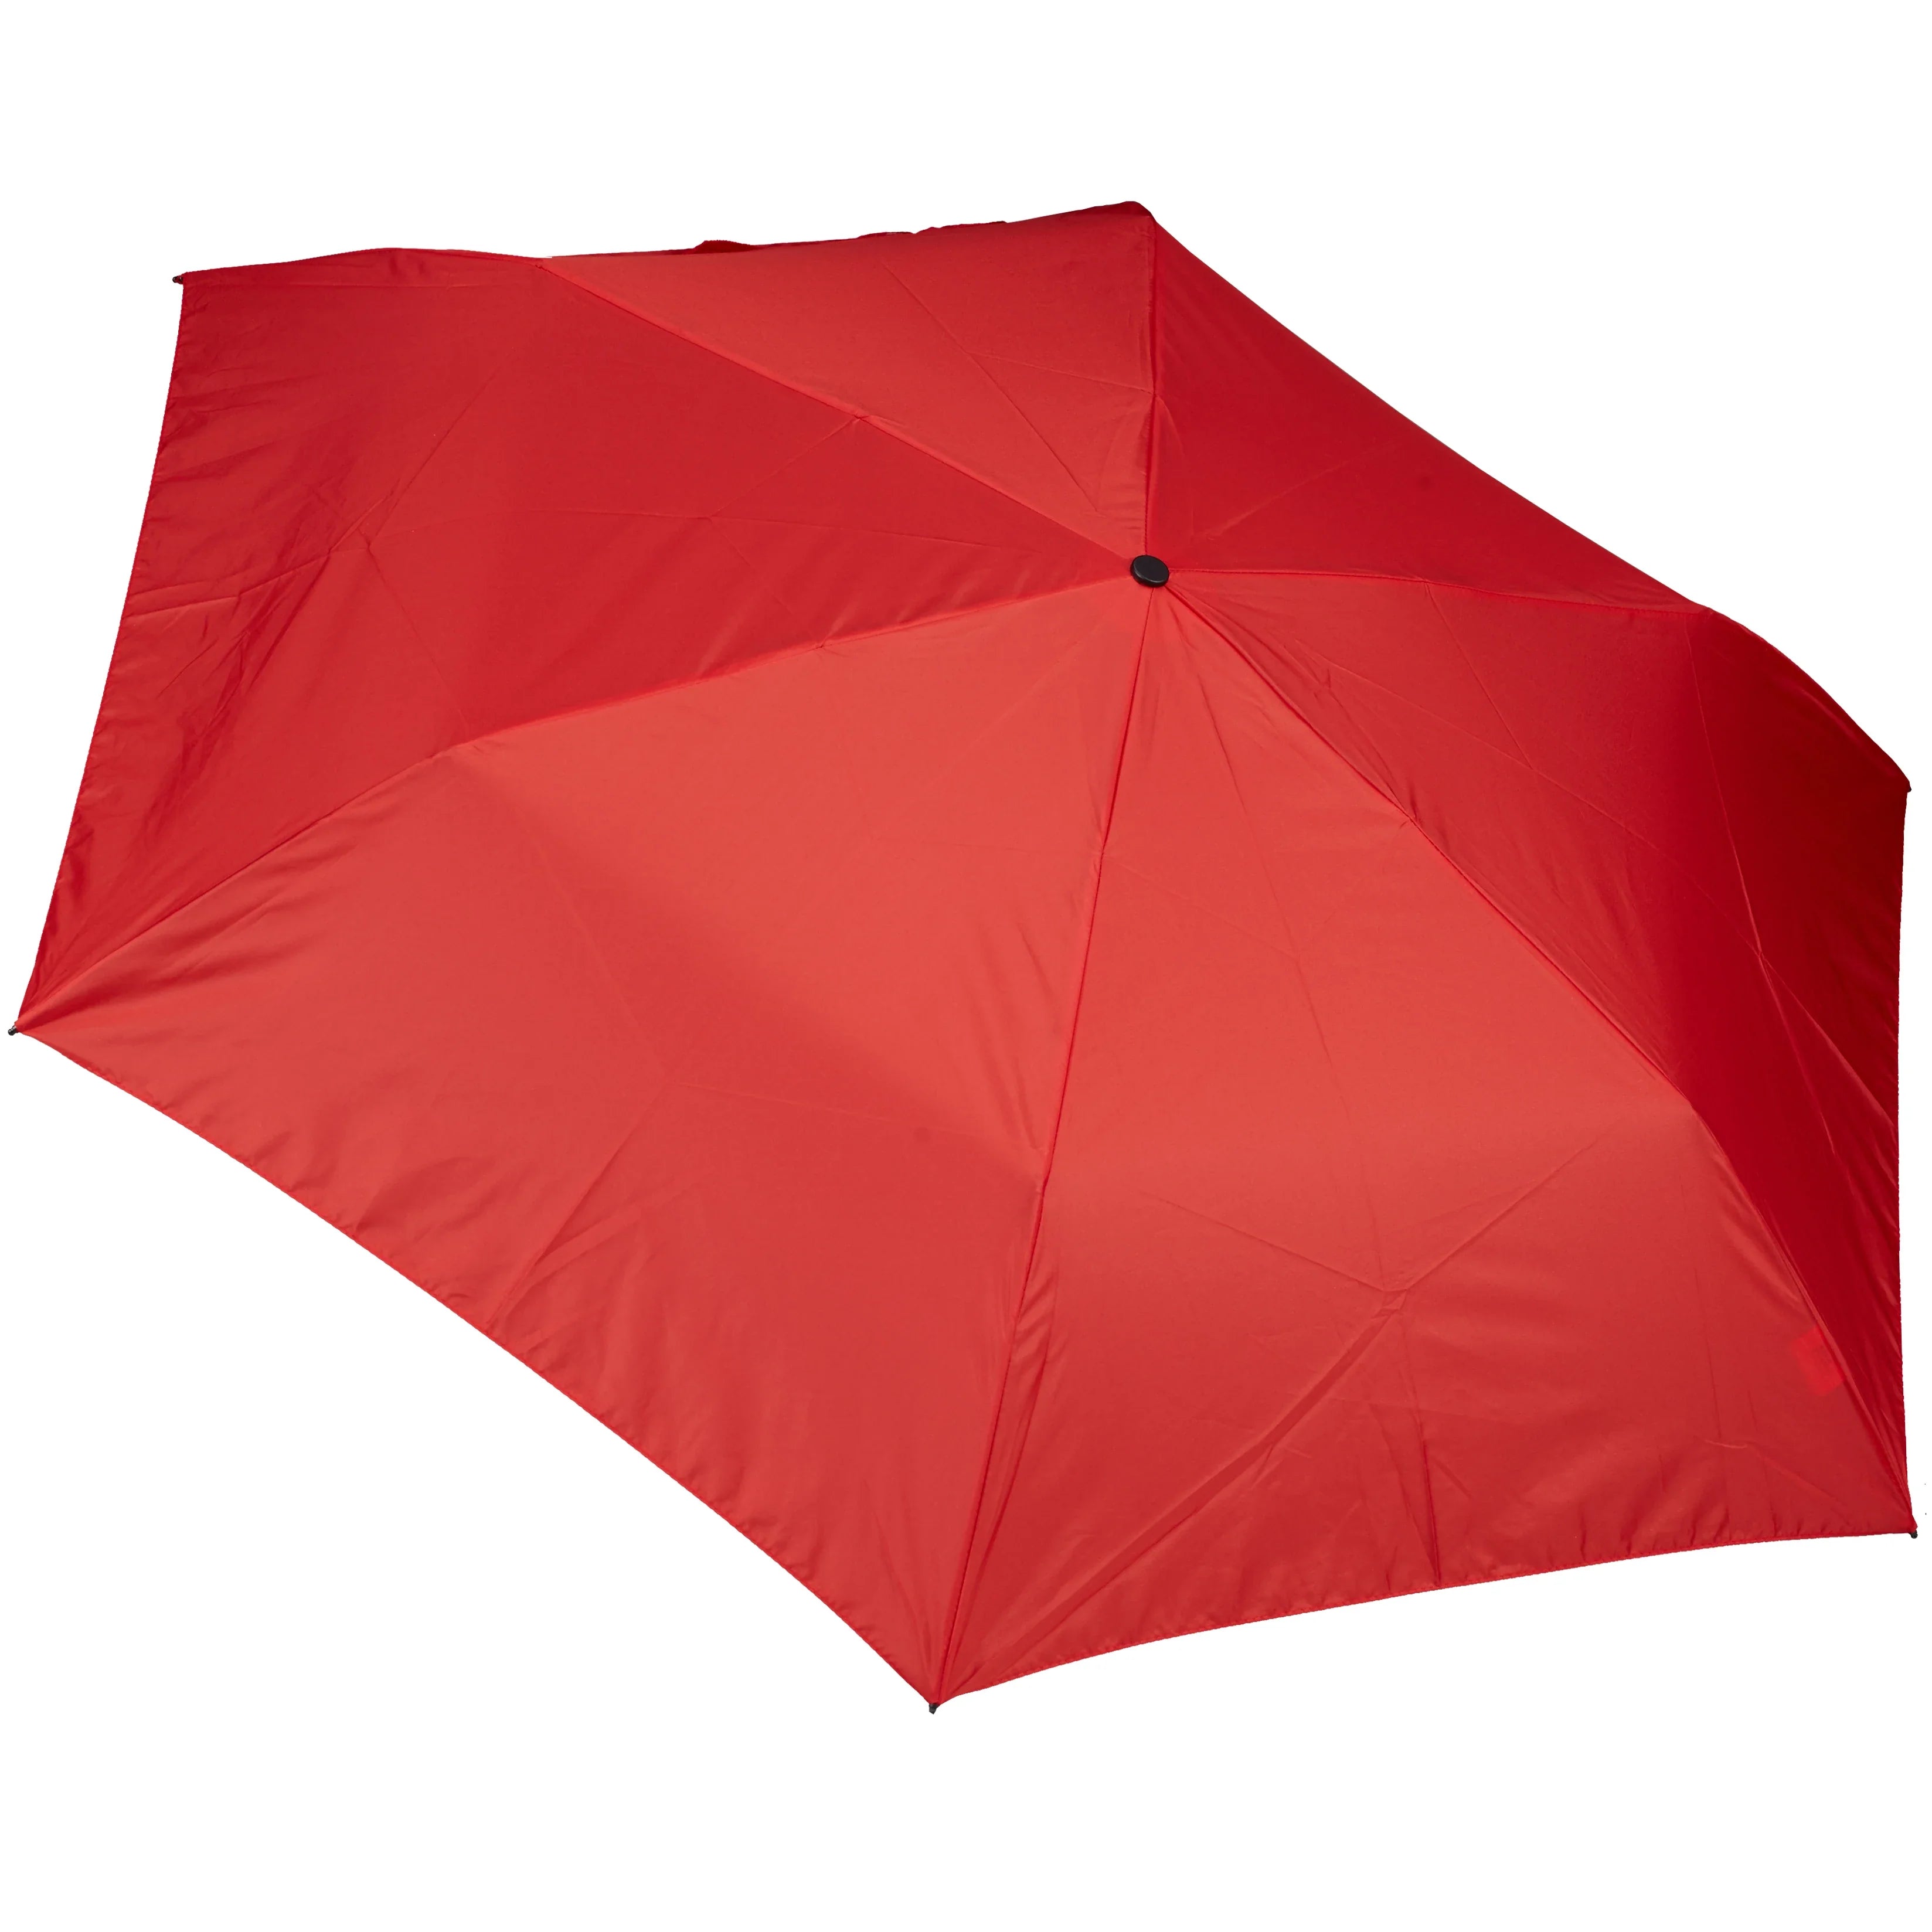 Parapluies pliants Doppler Parapluie pliant Zero99 21 cm - rouge feu